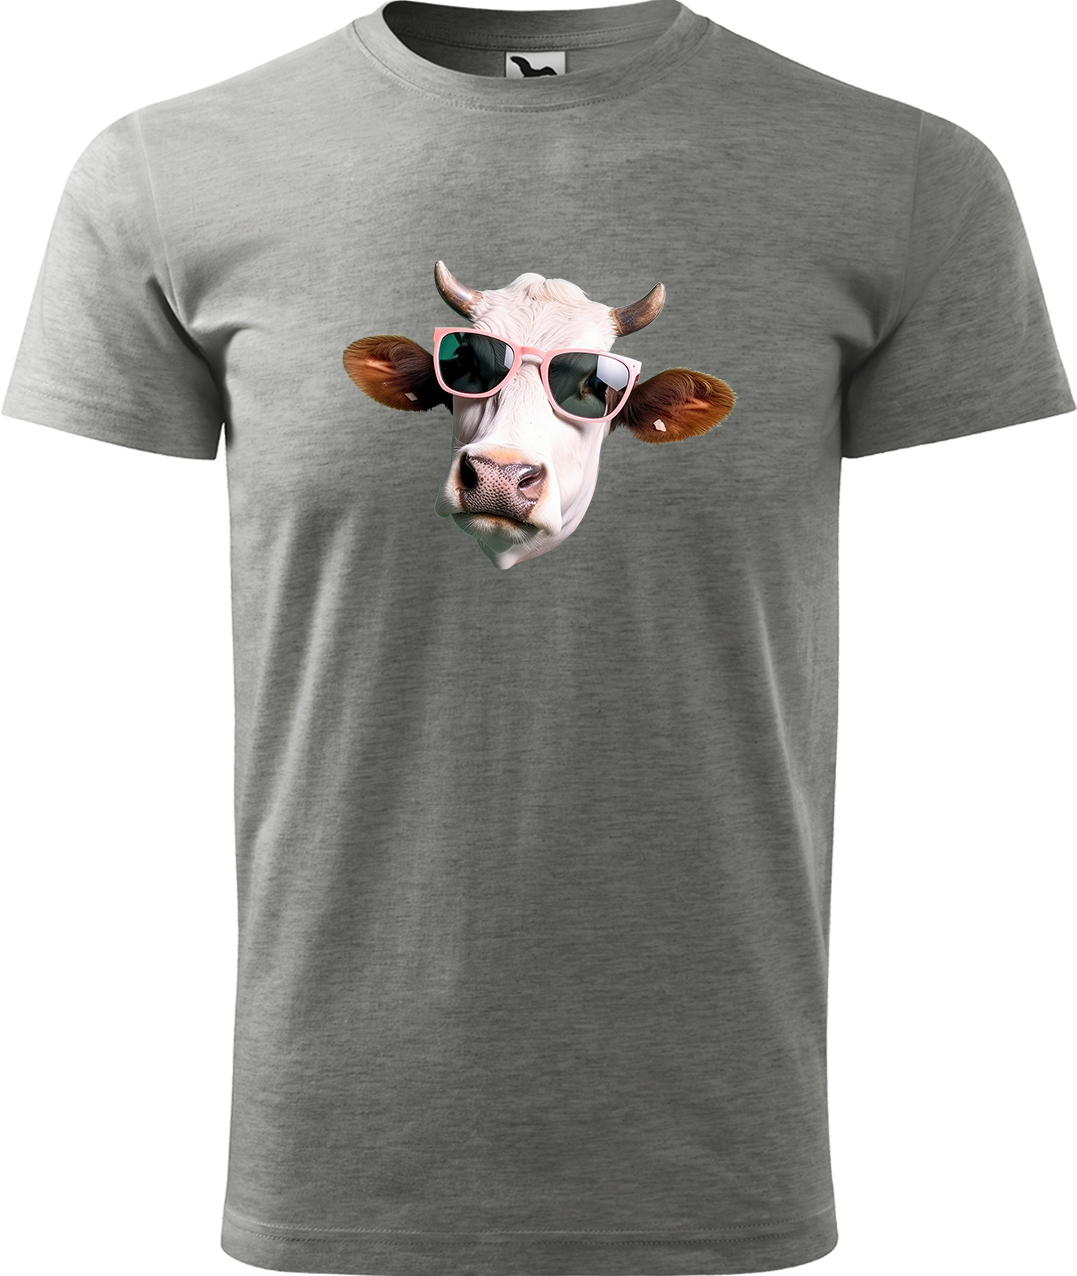 Pánské tričko s krávou - Kráva v brýlích Velikost: XL, Barva: Tmavě šedý melír (12), Střih: pánský